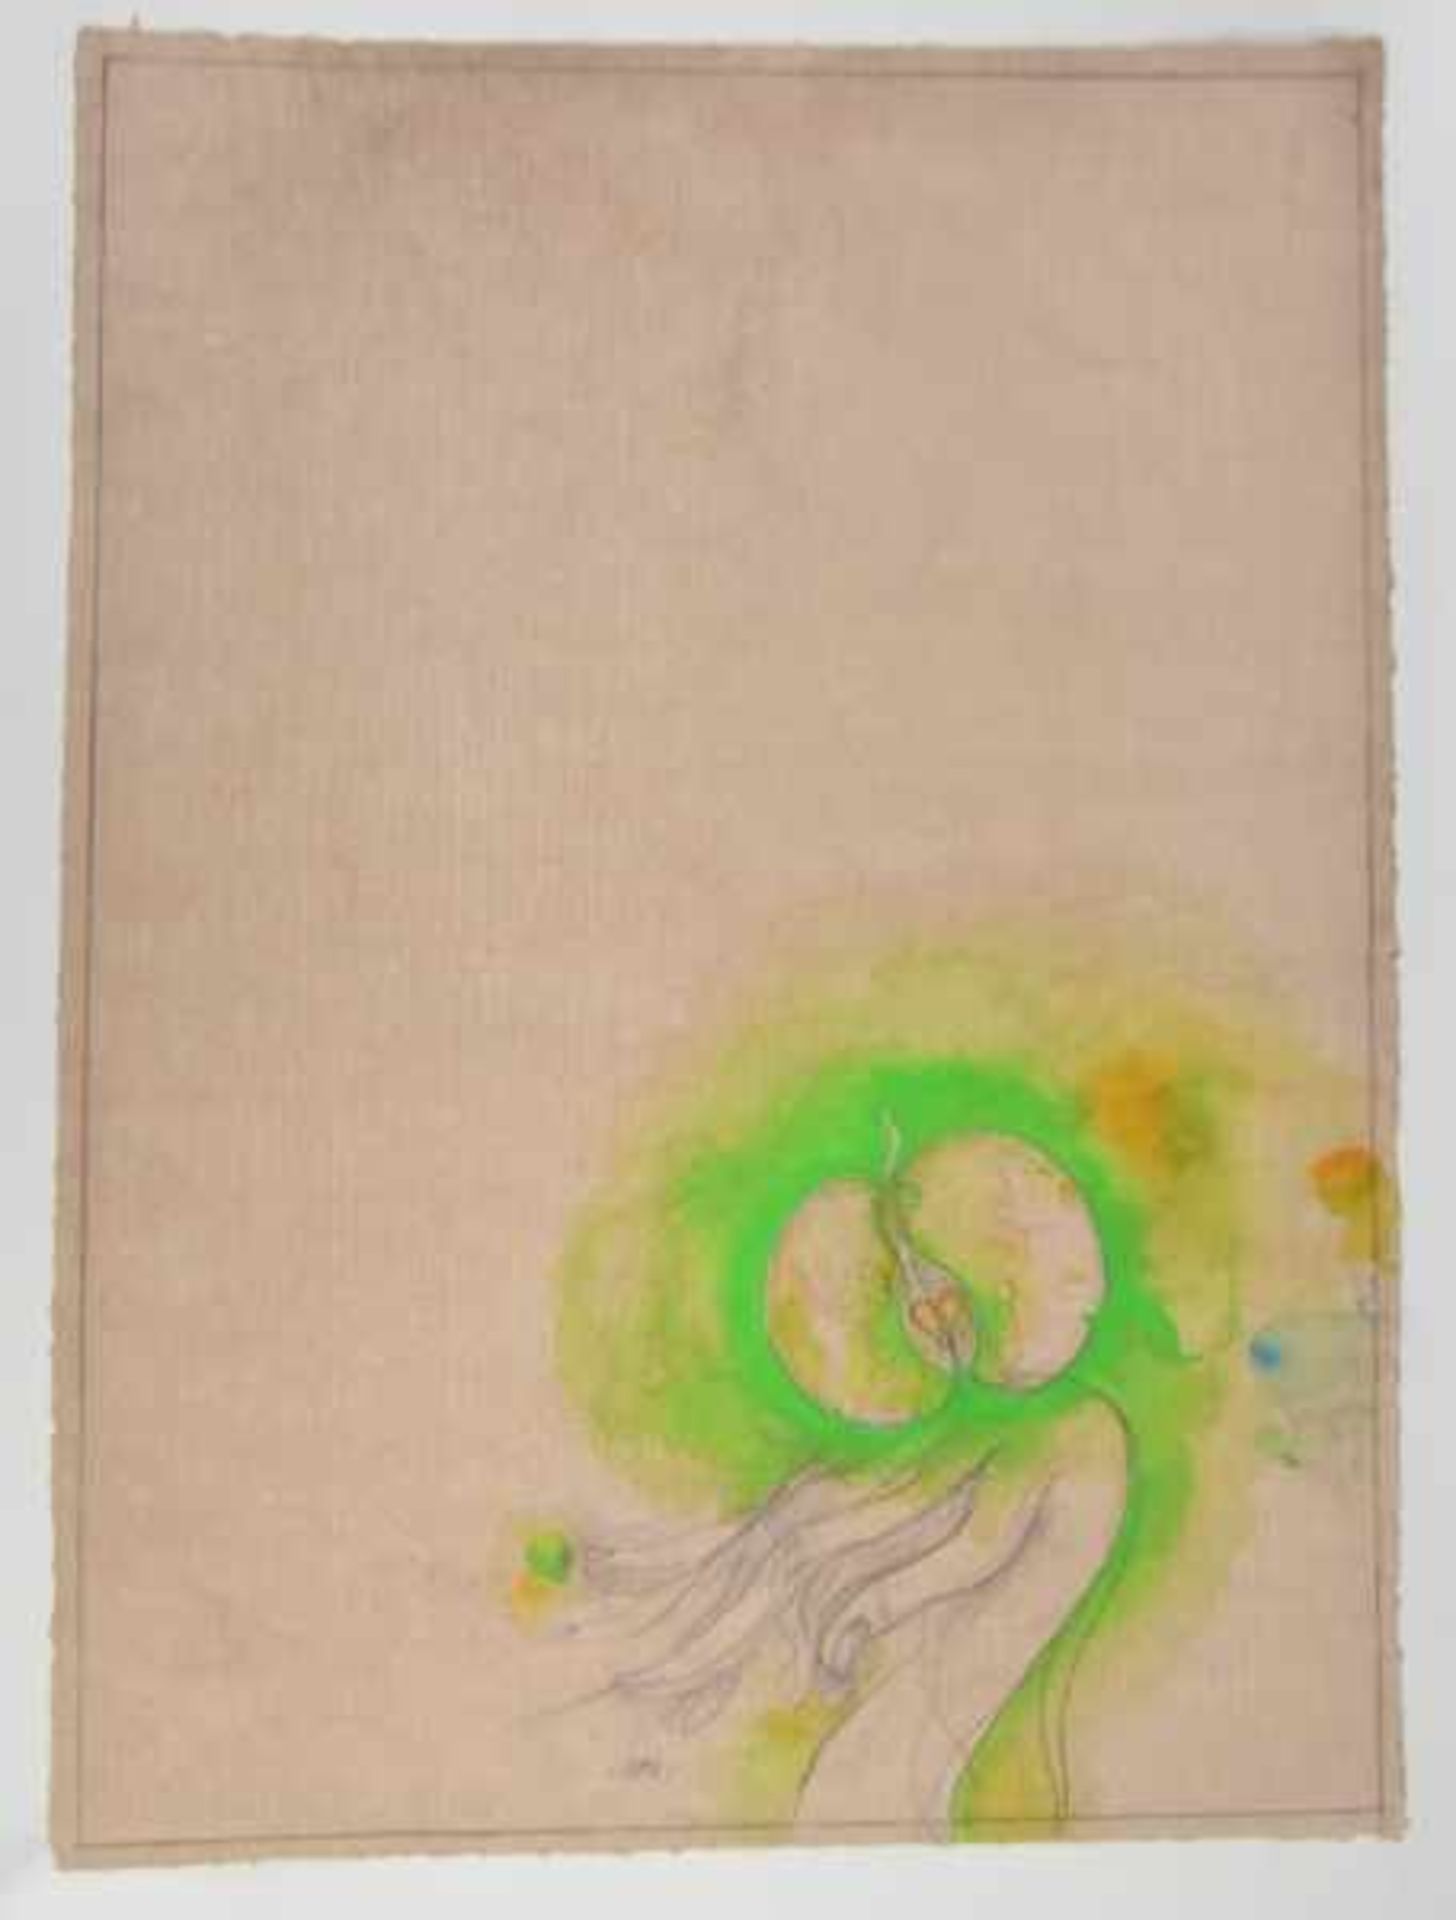 BRUNI Bruno (1935 Gradara) "Hand mit grünem Apfel" Bleistiftzeichnung mit Aquarell auf getöntem